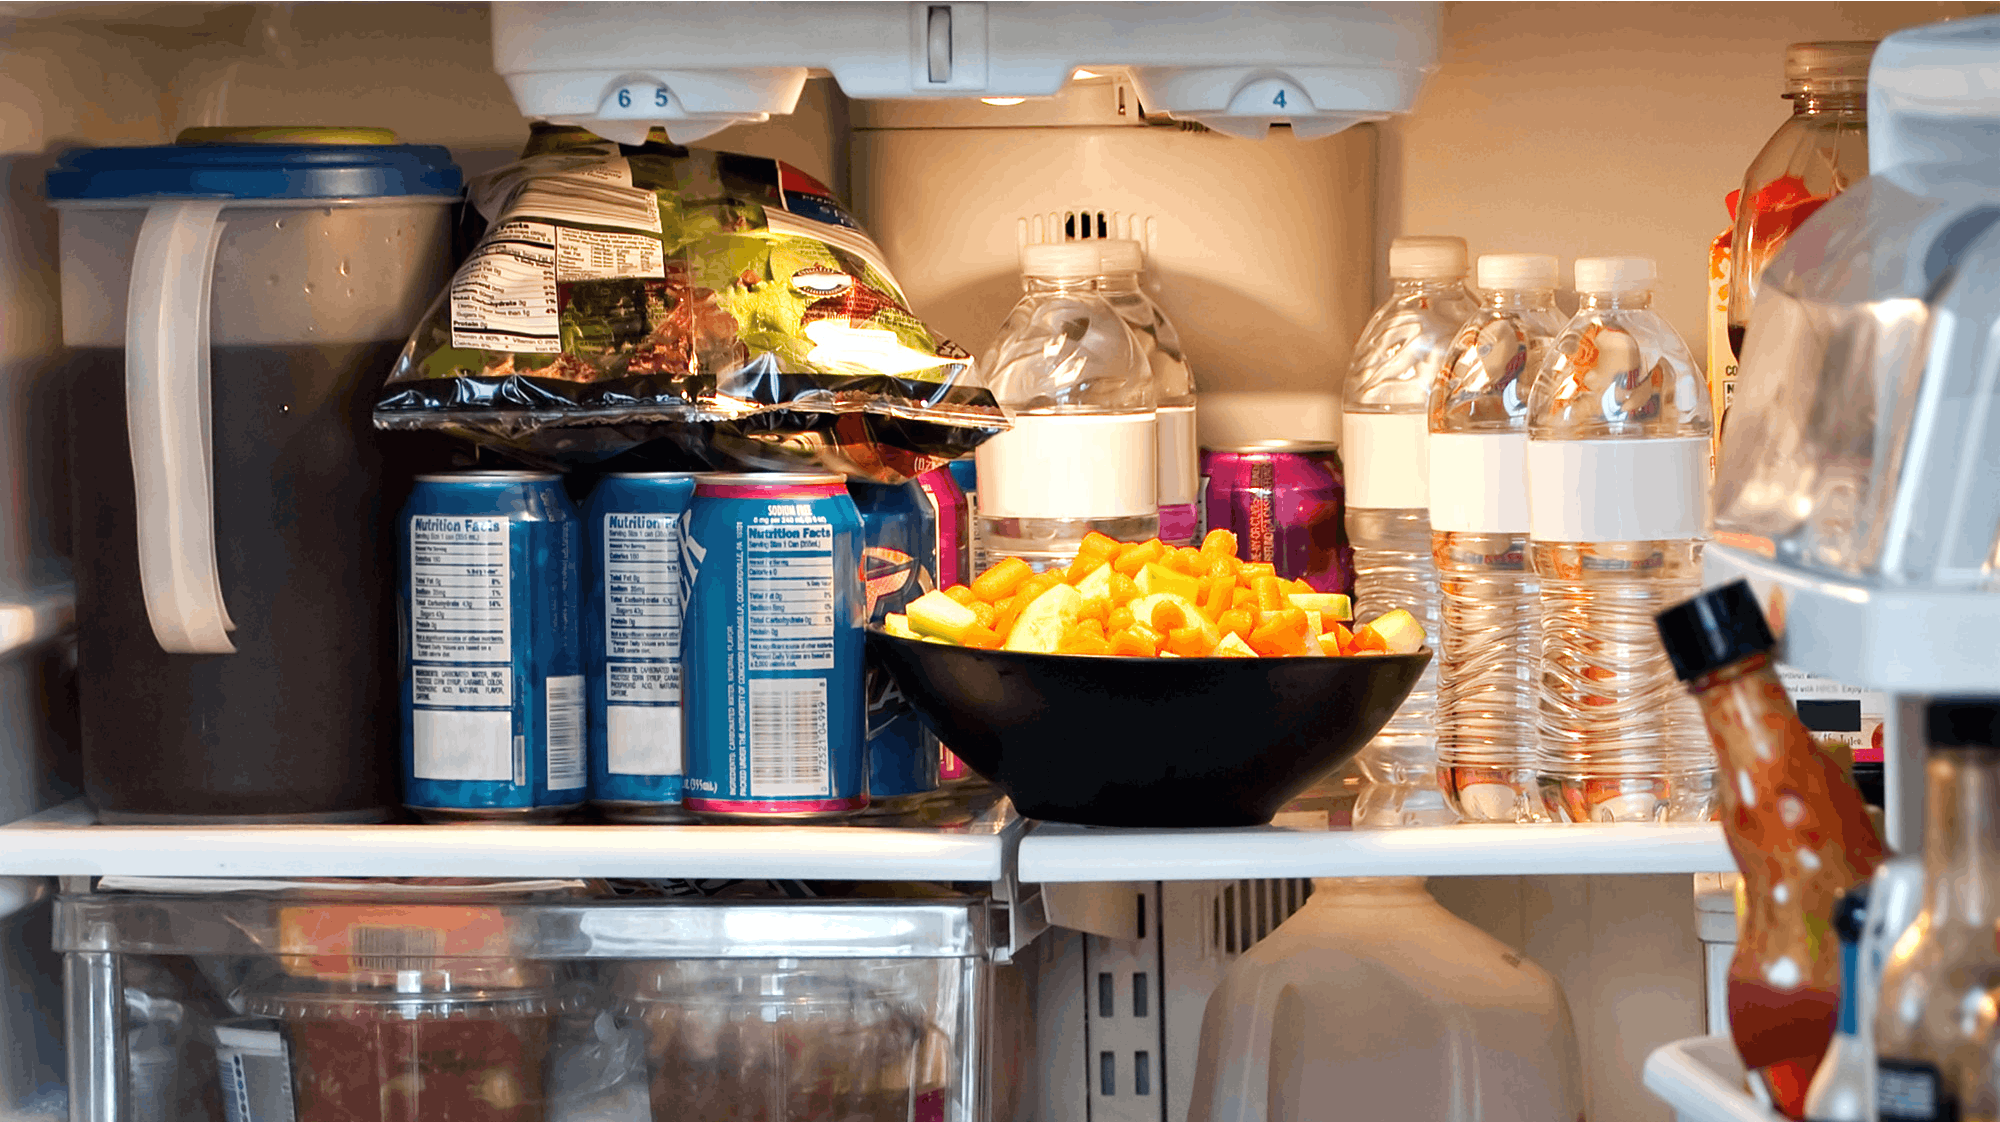 Ligner dit køleskab "en stoppet pølse", så er det måske tiden at få ryddet lidt op i det.